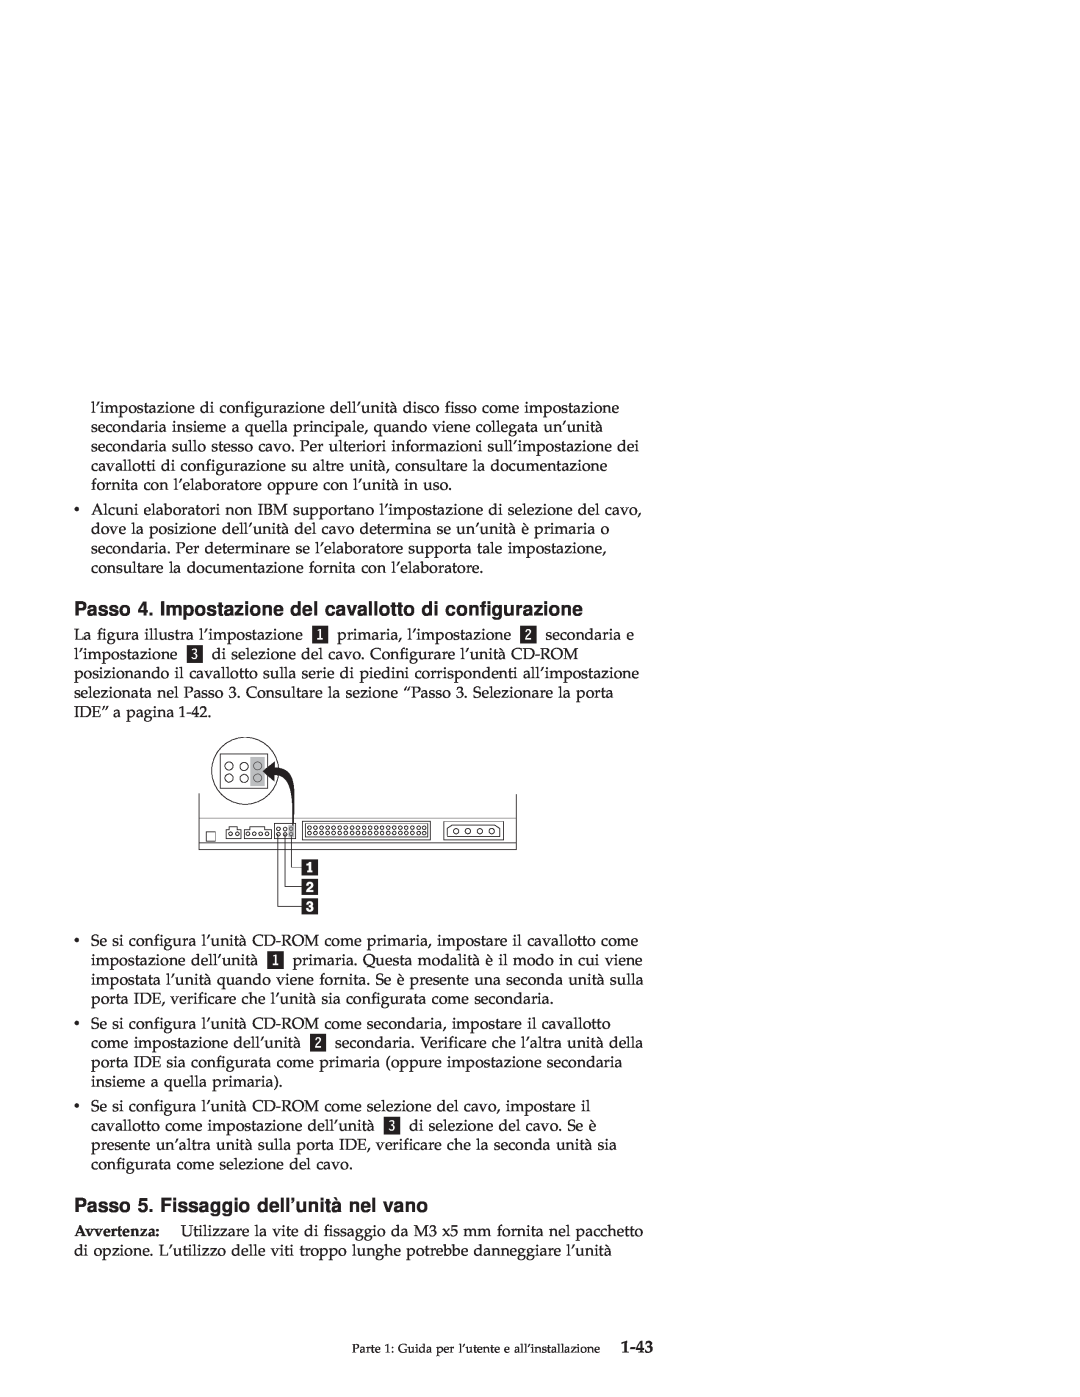 IBM 71P7279 manual Passo 4. Impostazione del cavallotto di configurazione, Passo 5. Fissaggio dellunità nel vano, 1-43 